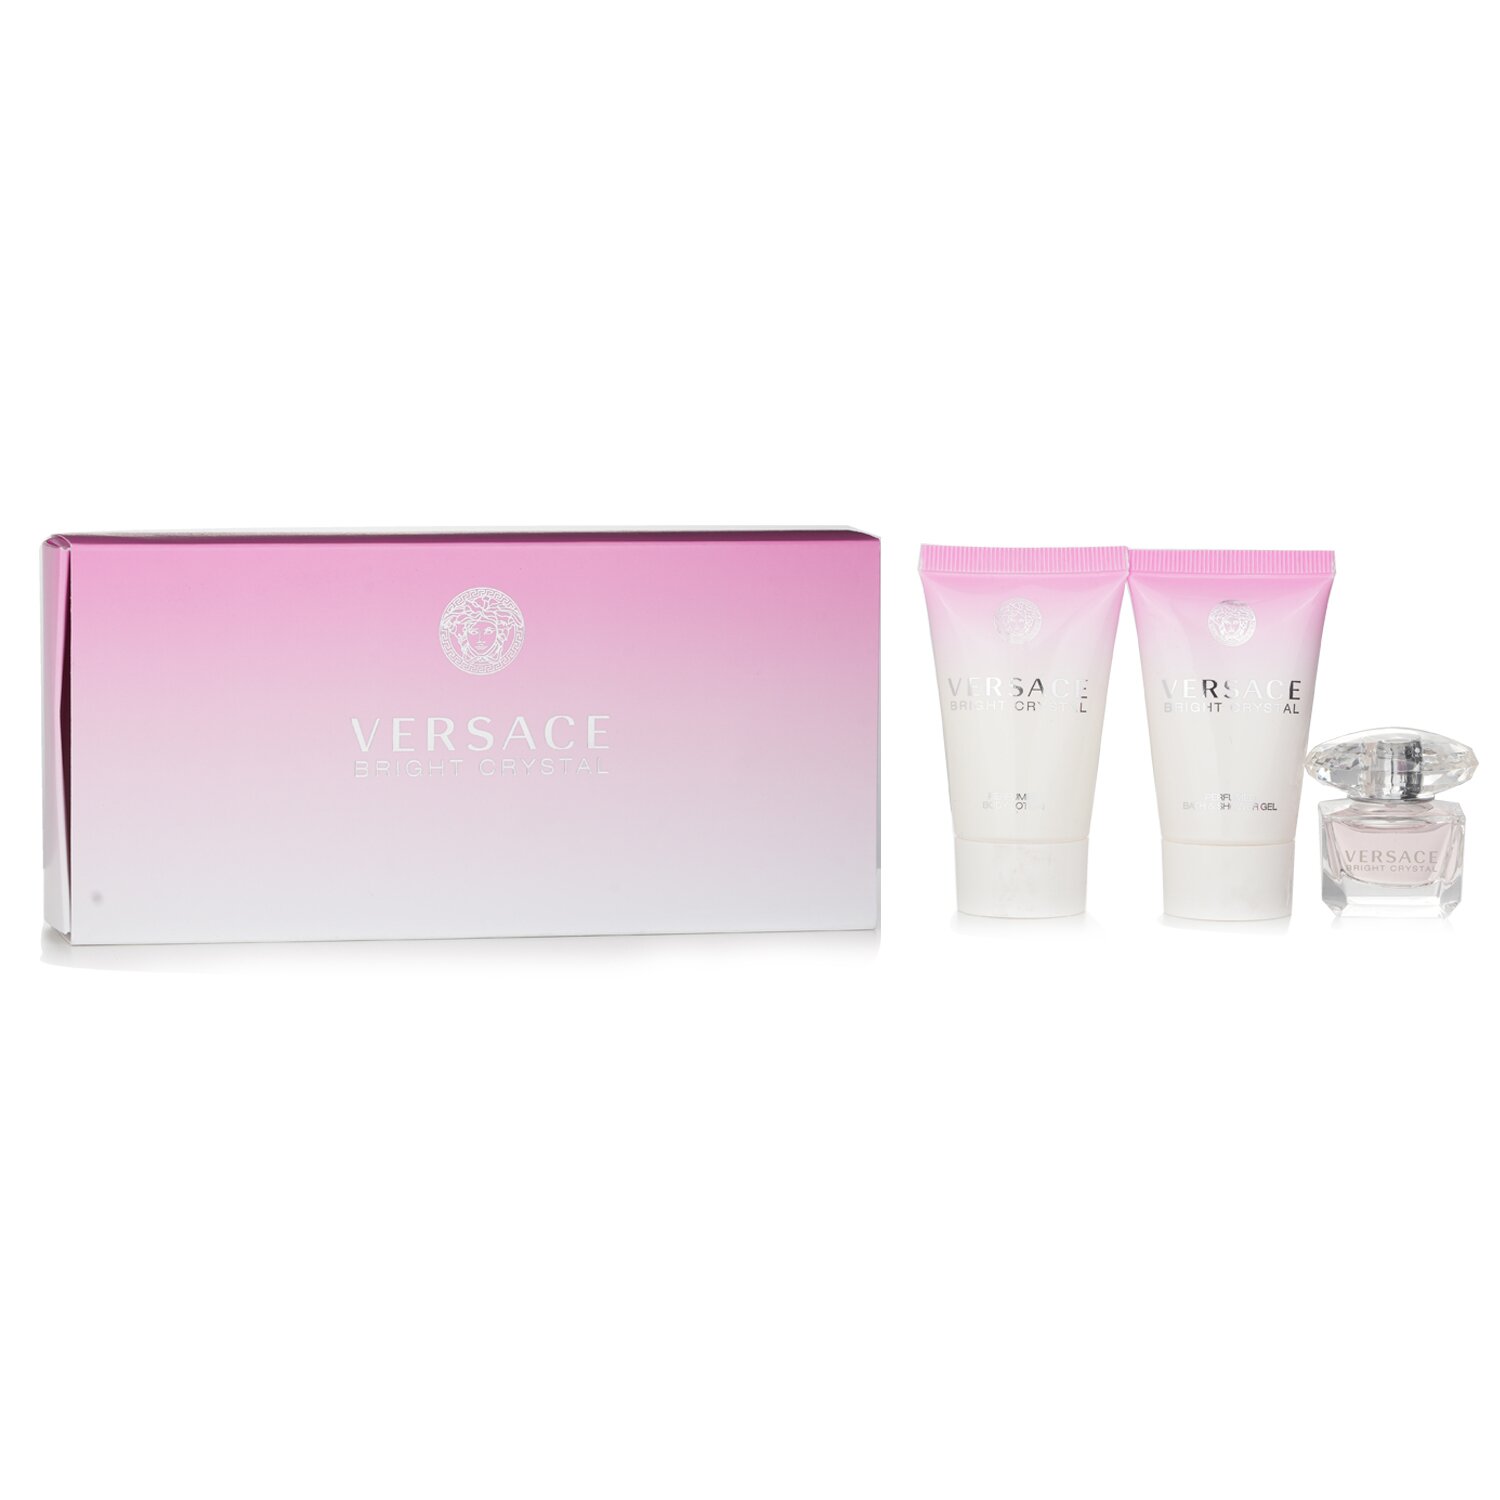 凡賽斯 Versace - Bright Crystal (迷你裝)香水禮盒